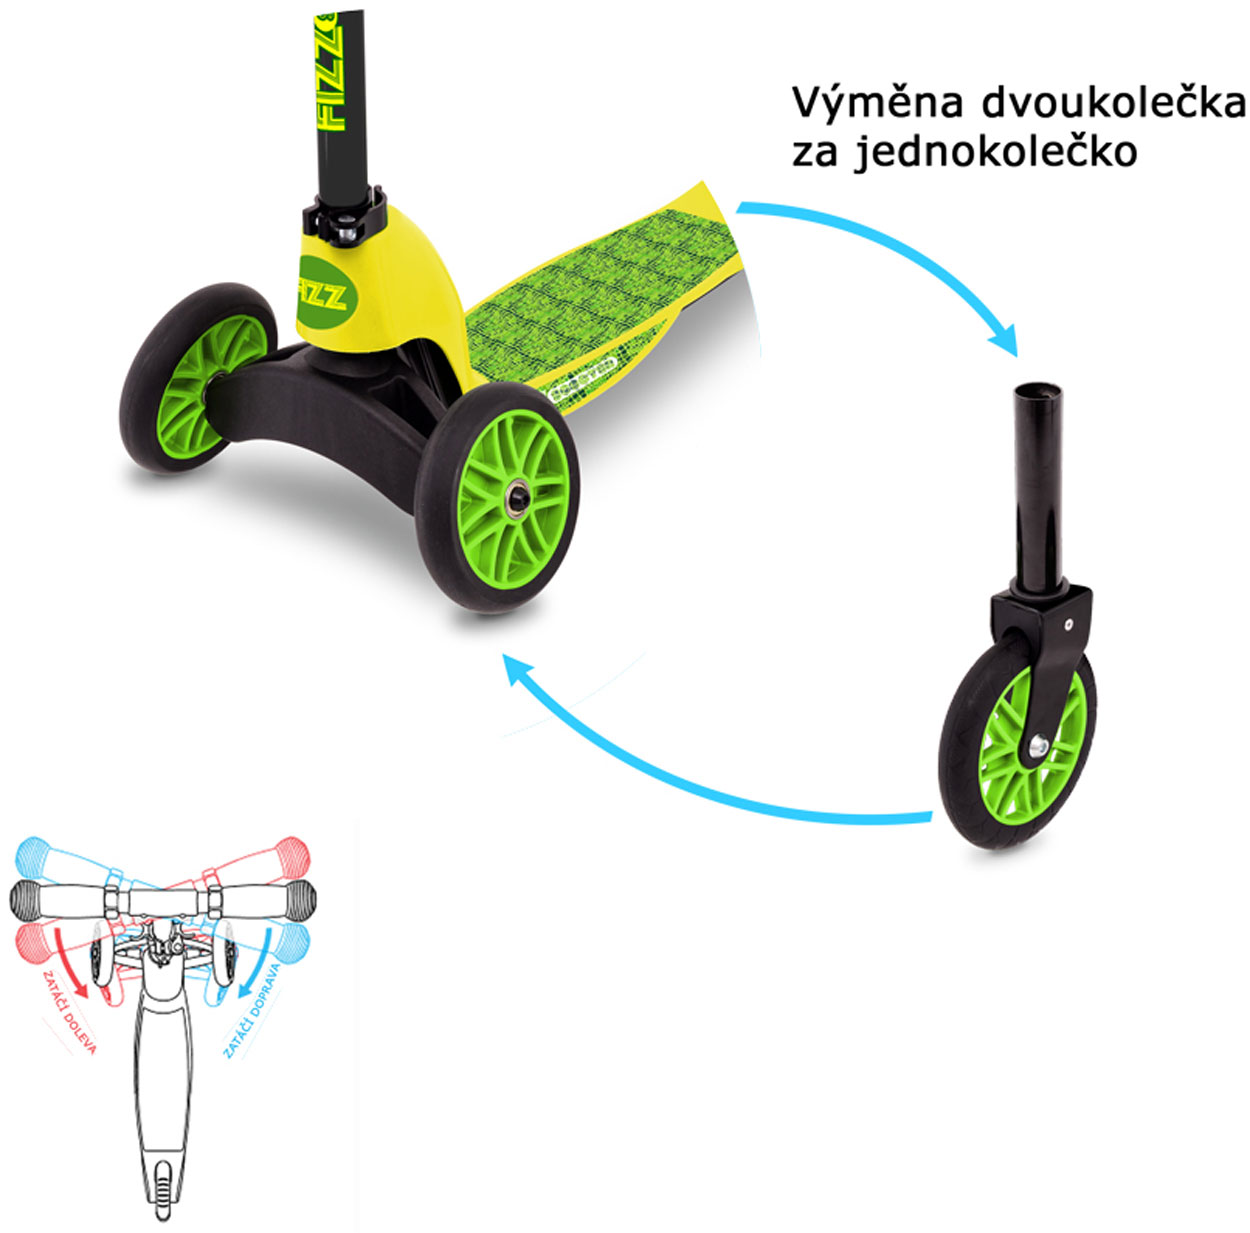 Three-wheeled kick scooter